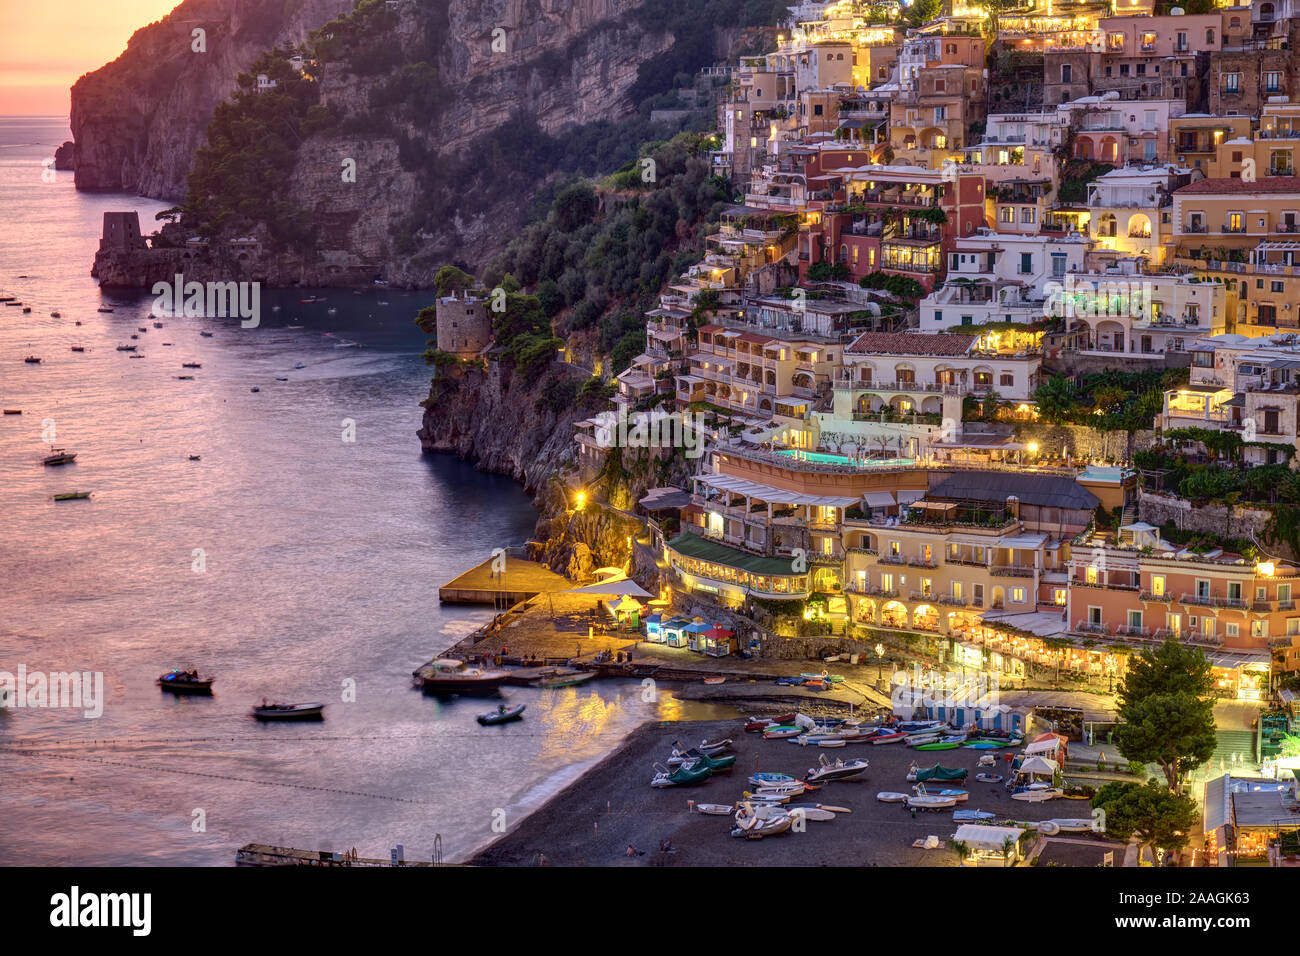 Detail of Positano on the italian Amalfi coast after sunset Stock Photo